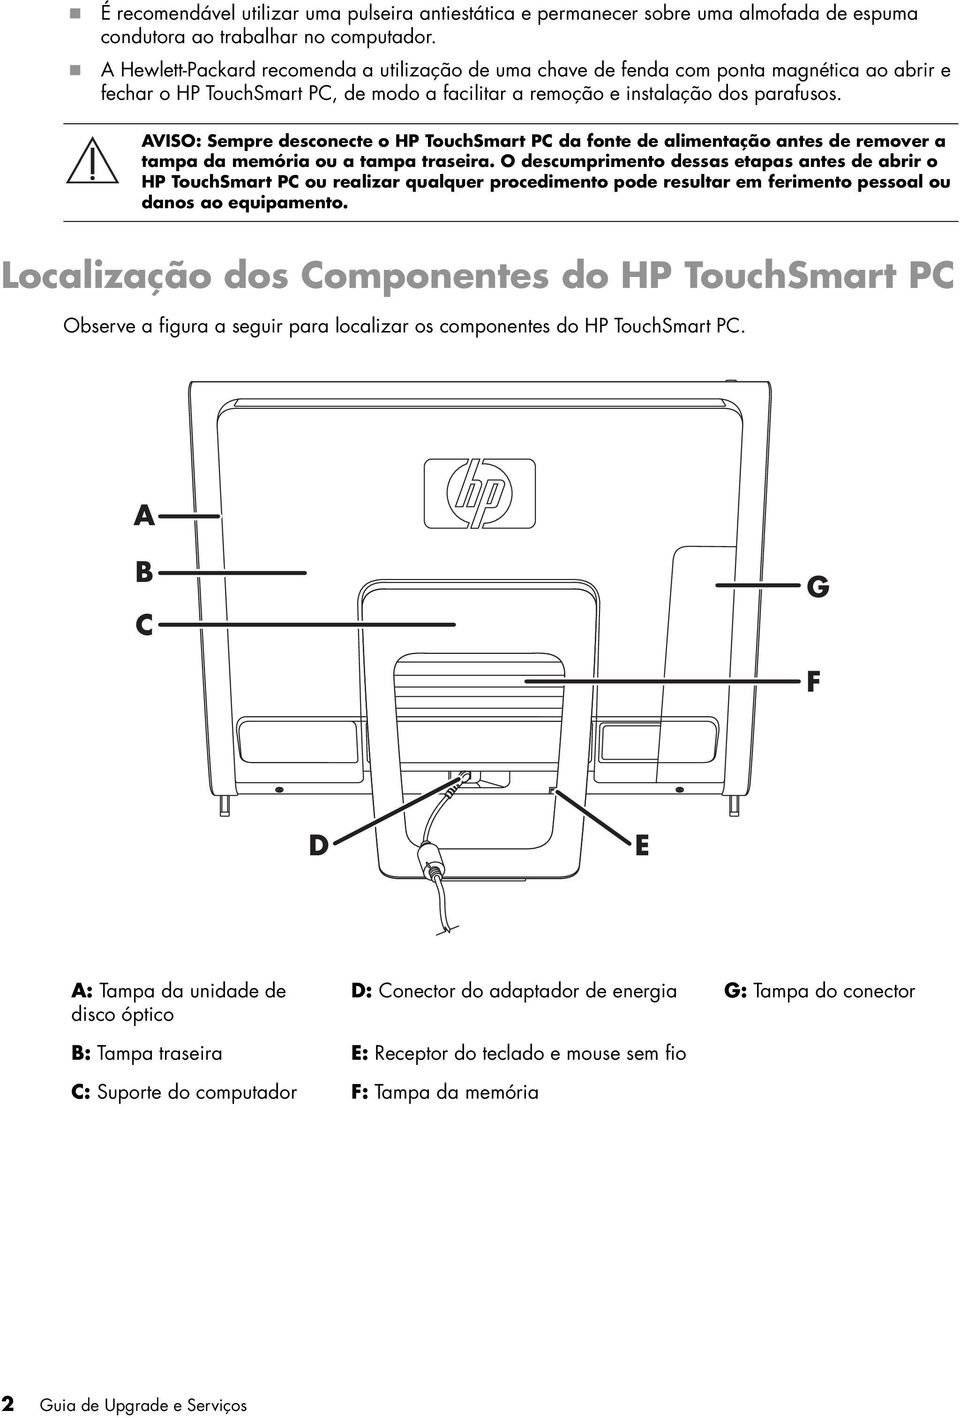 AVISO: Sempre desconecte o HP TouchSmart PC da fonte de alimentação antes de remover a tampa da memória ou a tampa traseira.